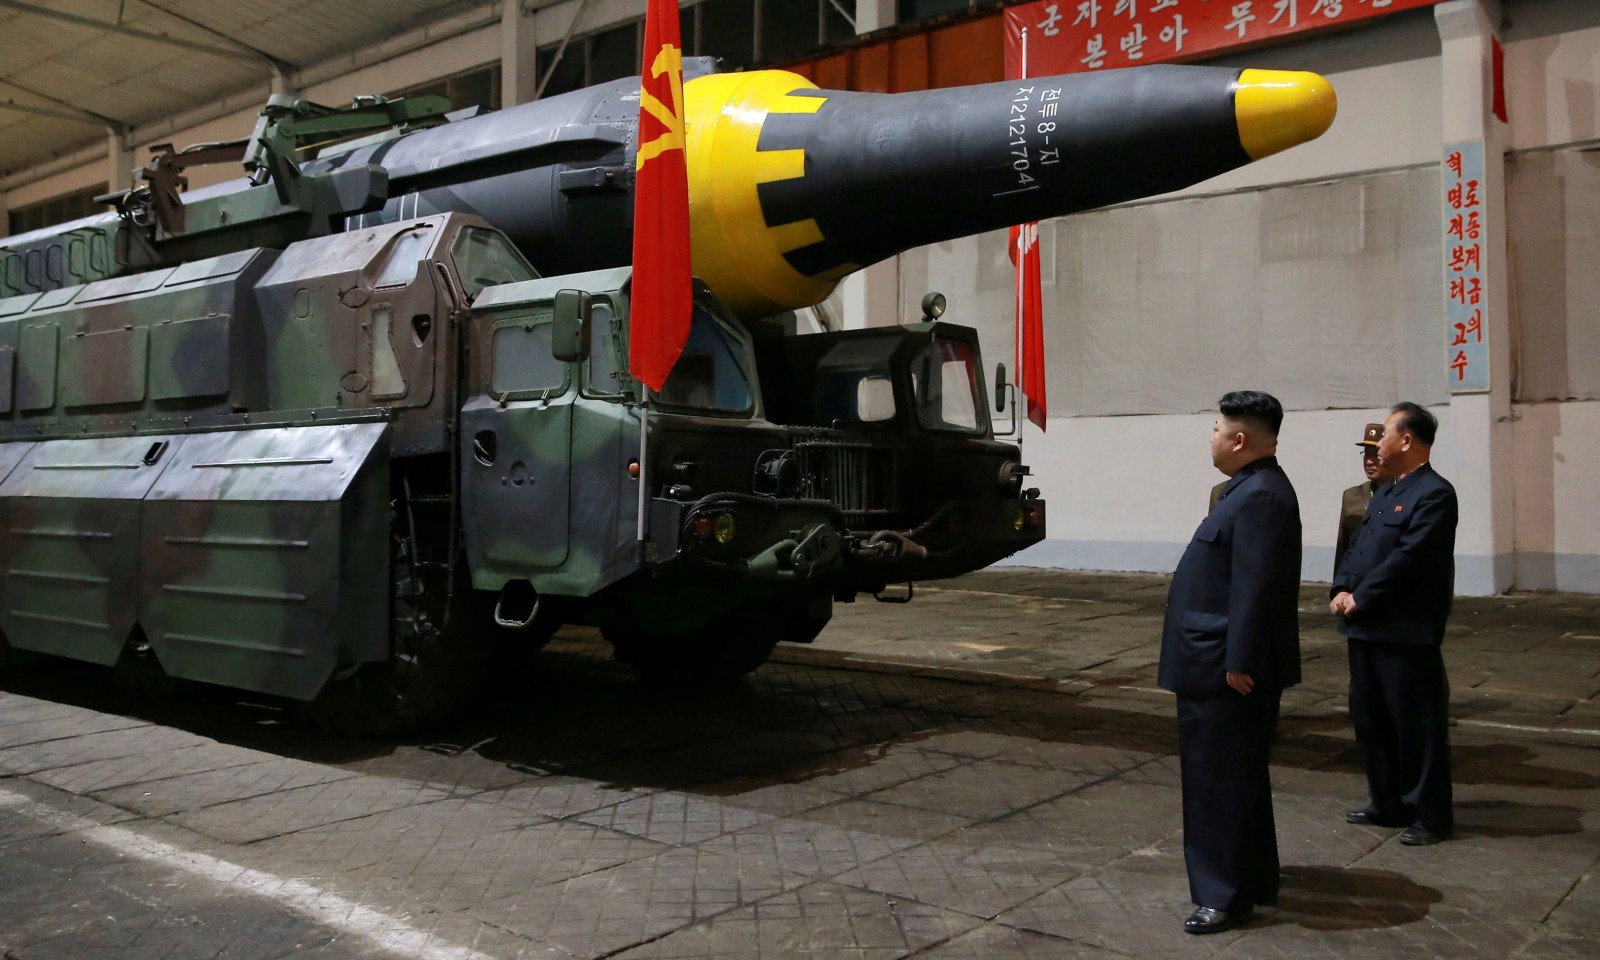 مركز دراسات أمريكي: كوريا الشمالية تبقي على قواعد صواريخ غير معلنة